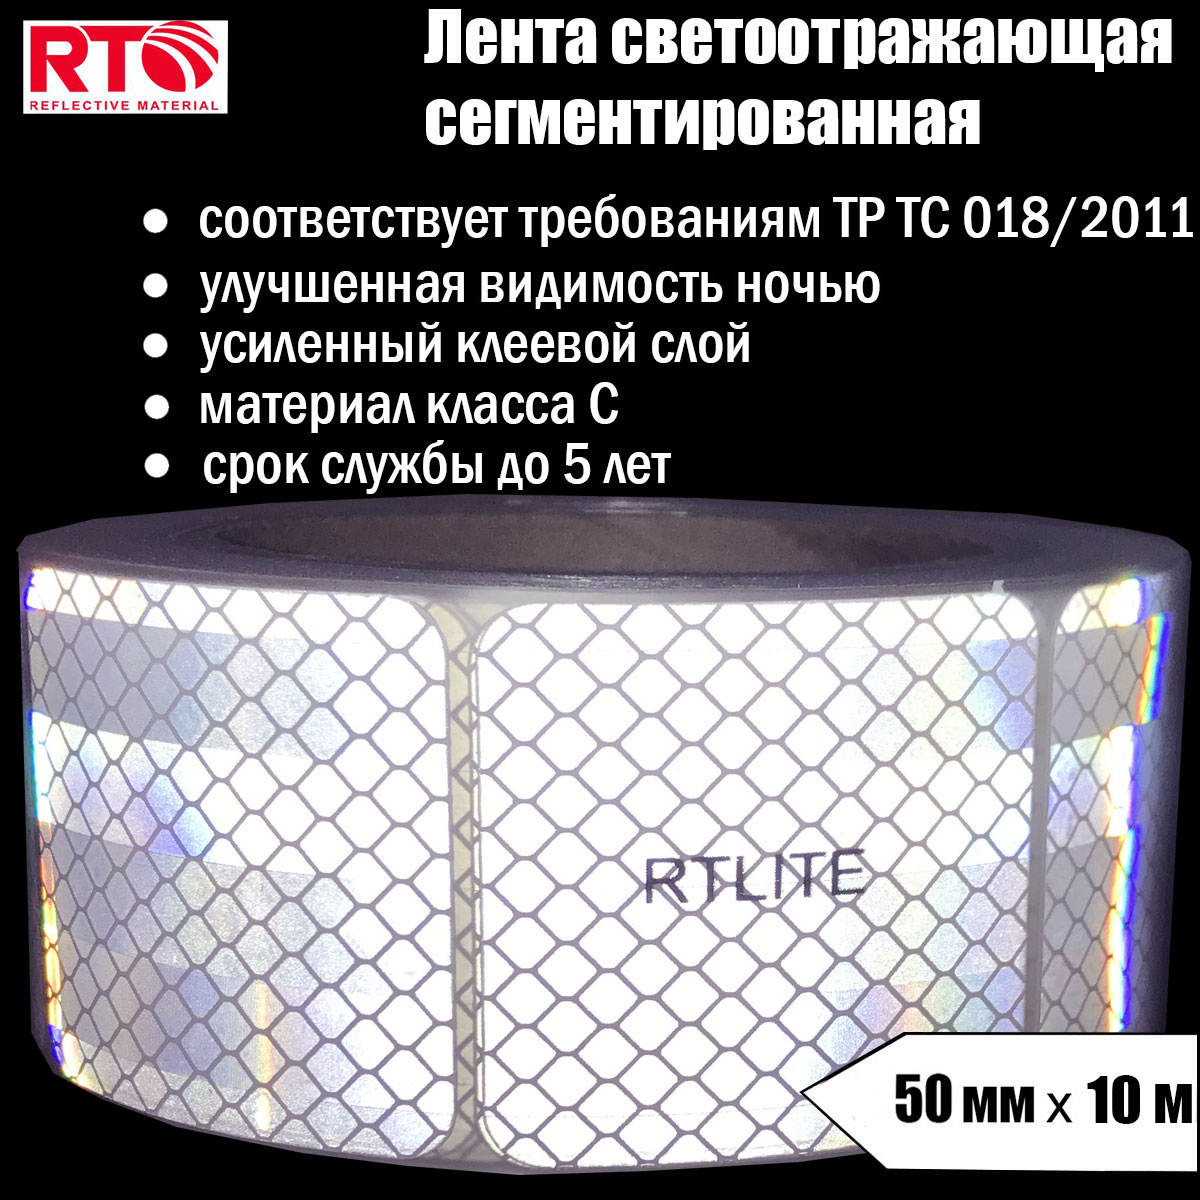 Лента светоотражающая сегментированная RTLITE RT-V104 для контурной маркировки, 50мм х 10м лента светоотражающая сегментированная rtlite rt v104 для контурной маркировки 50мм х 50м